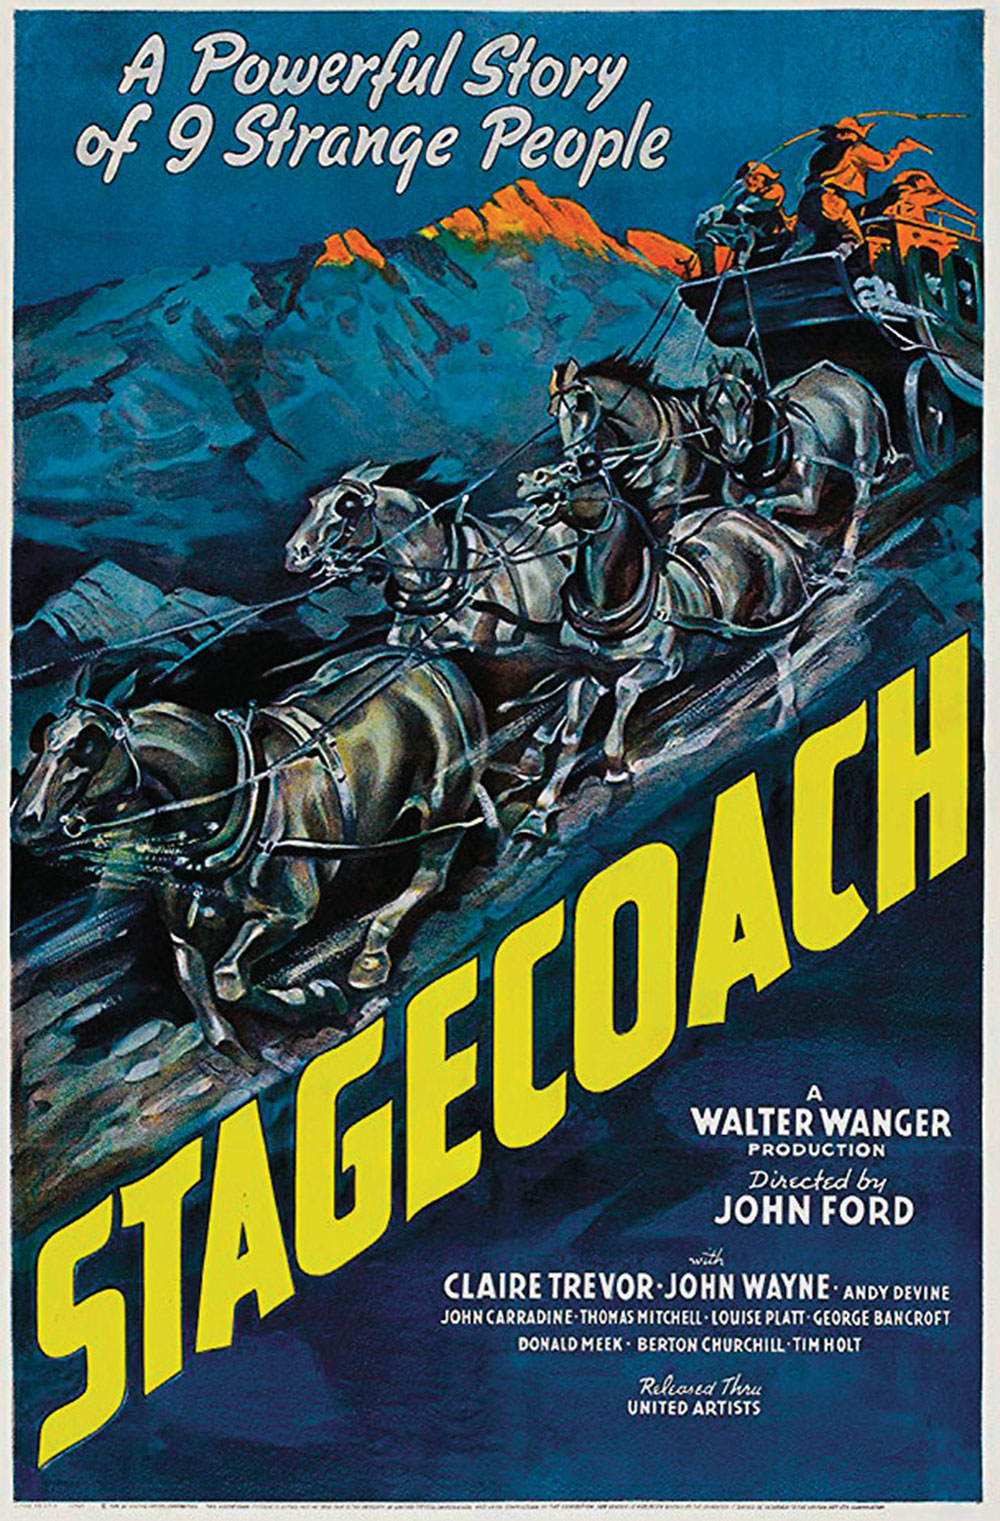 stagecoach movie poster true west magazine